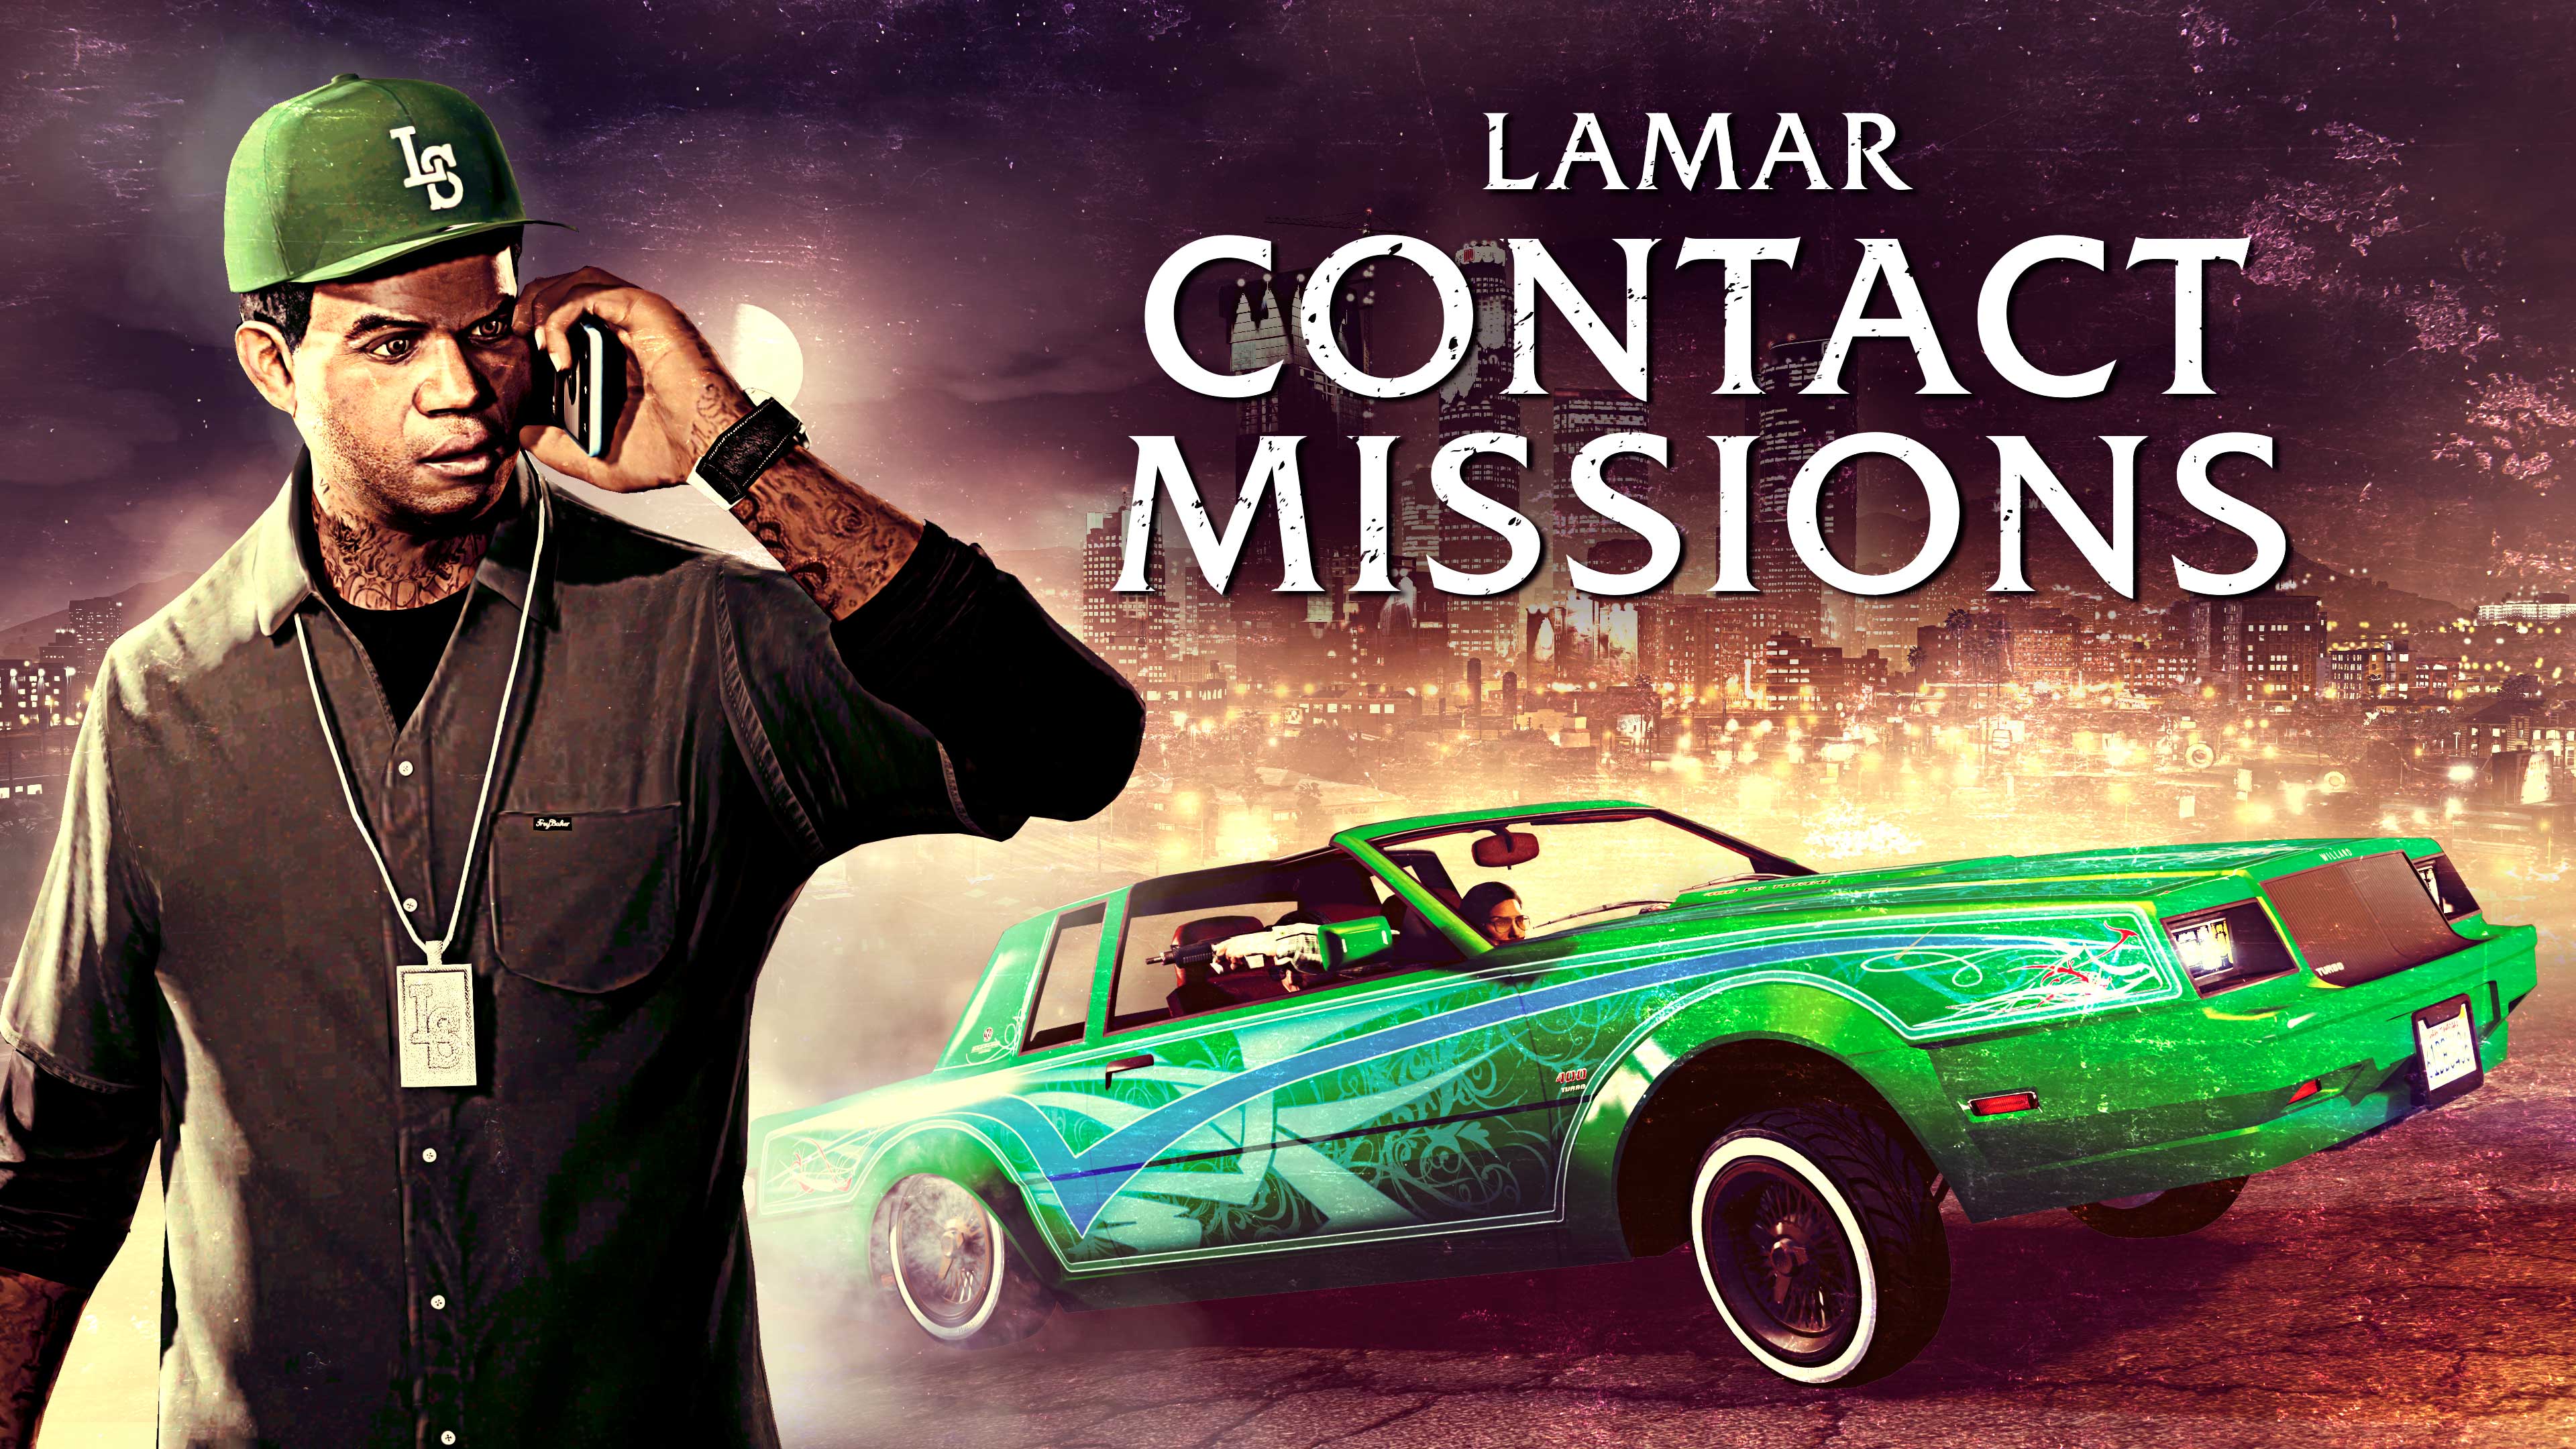 imagem do Lamar, veículo lowrider do GTA Online e logotipo das missões de contacto do Lamar